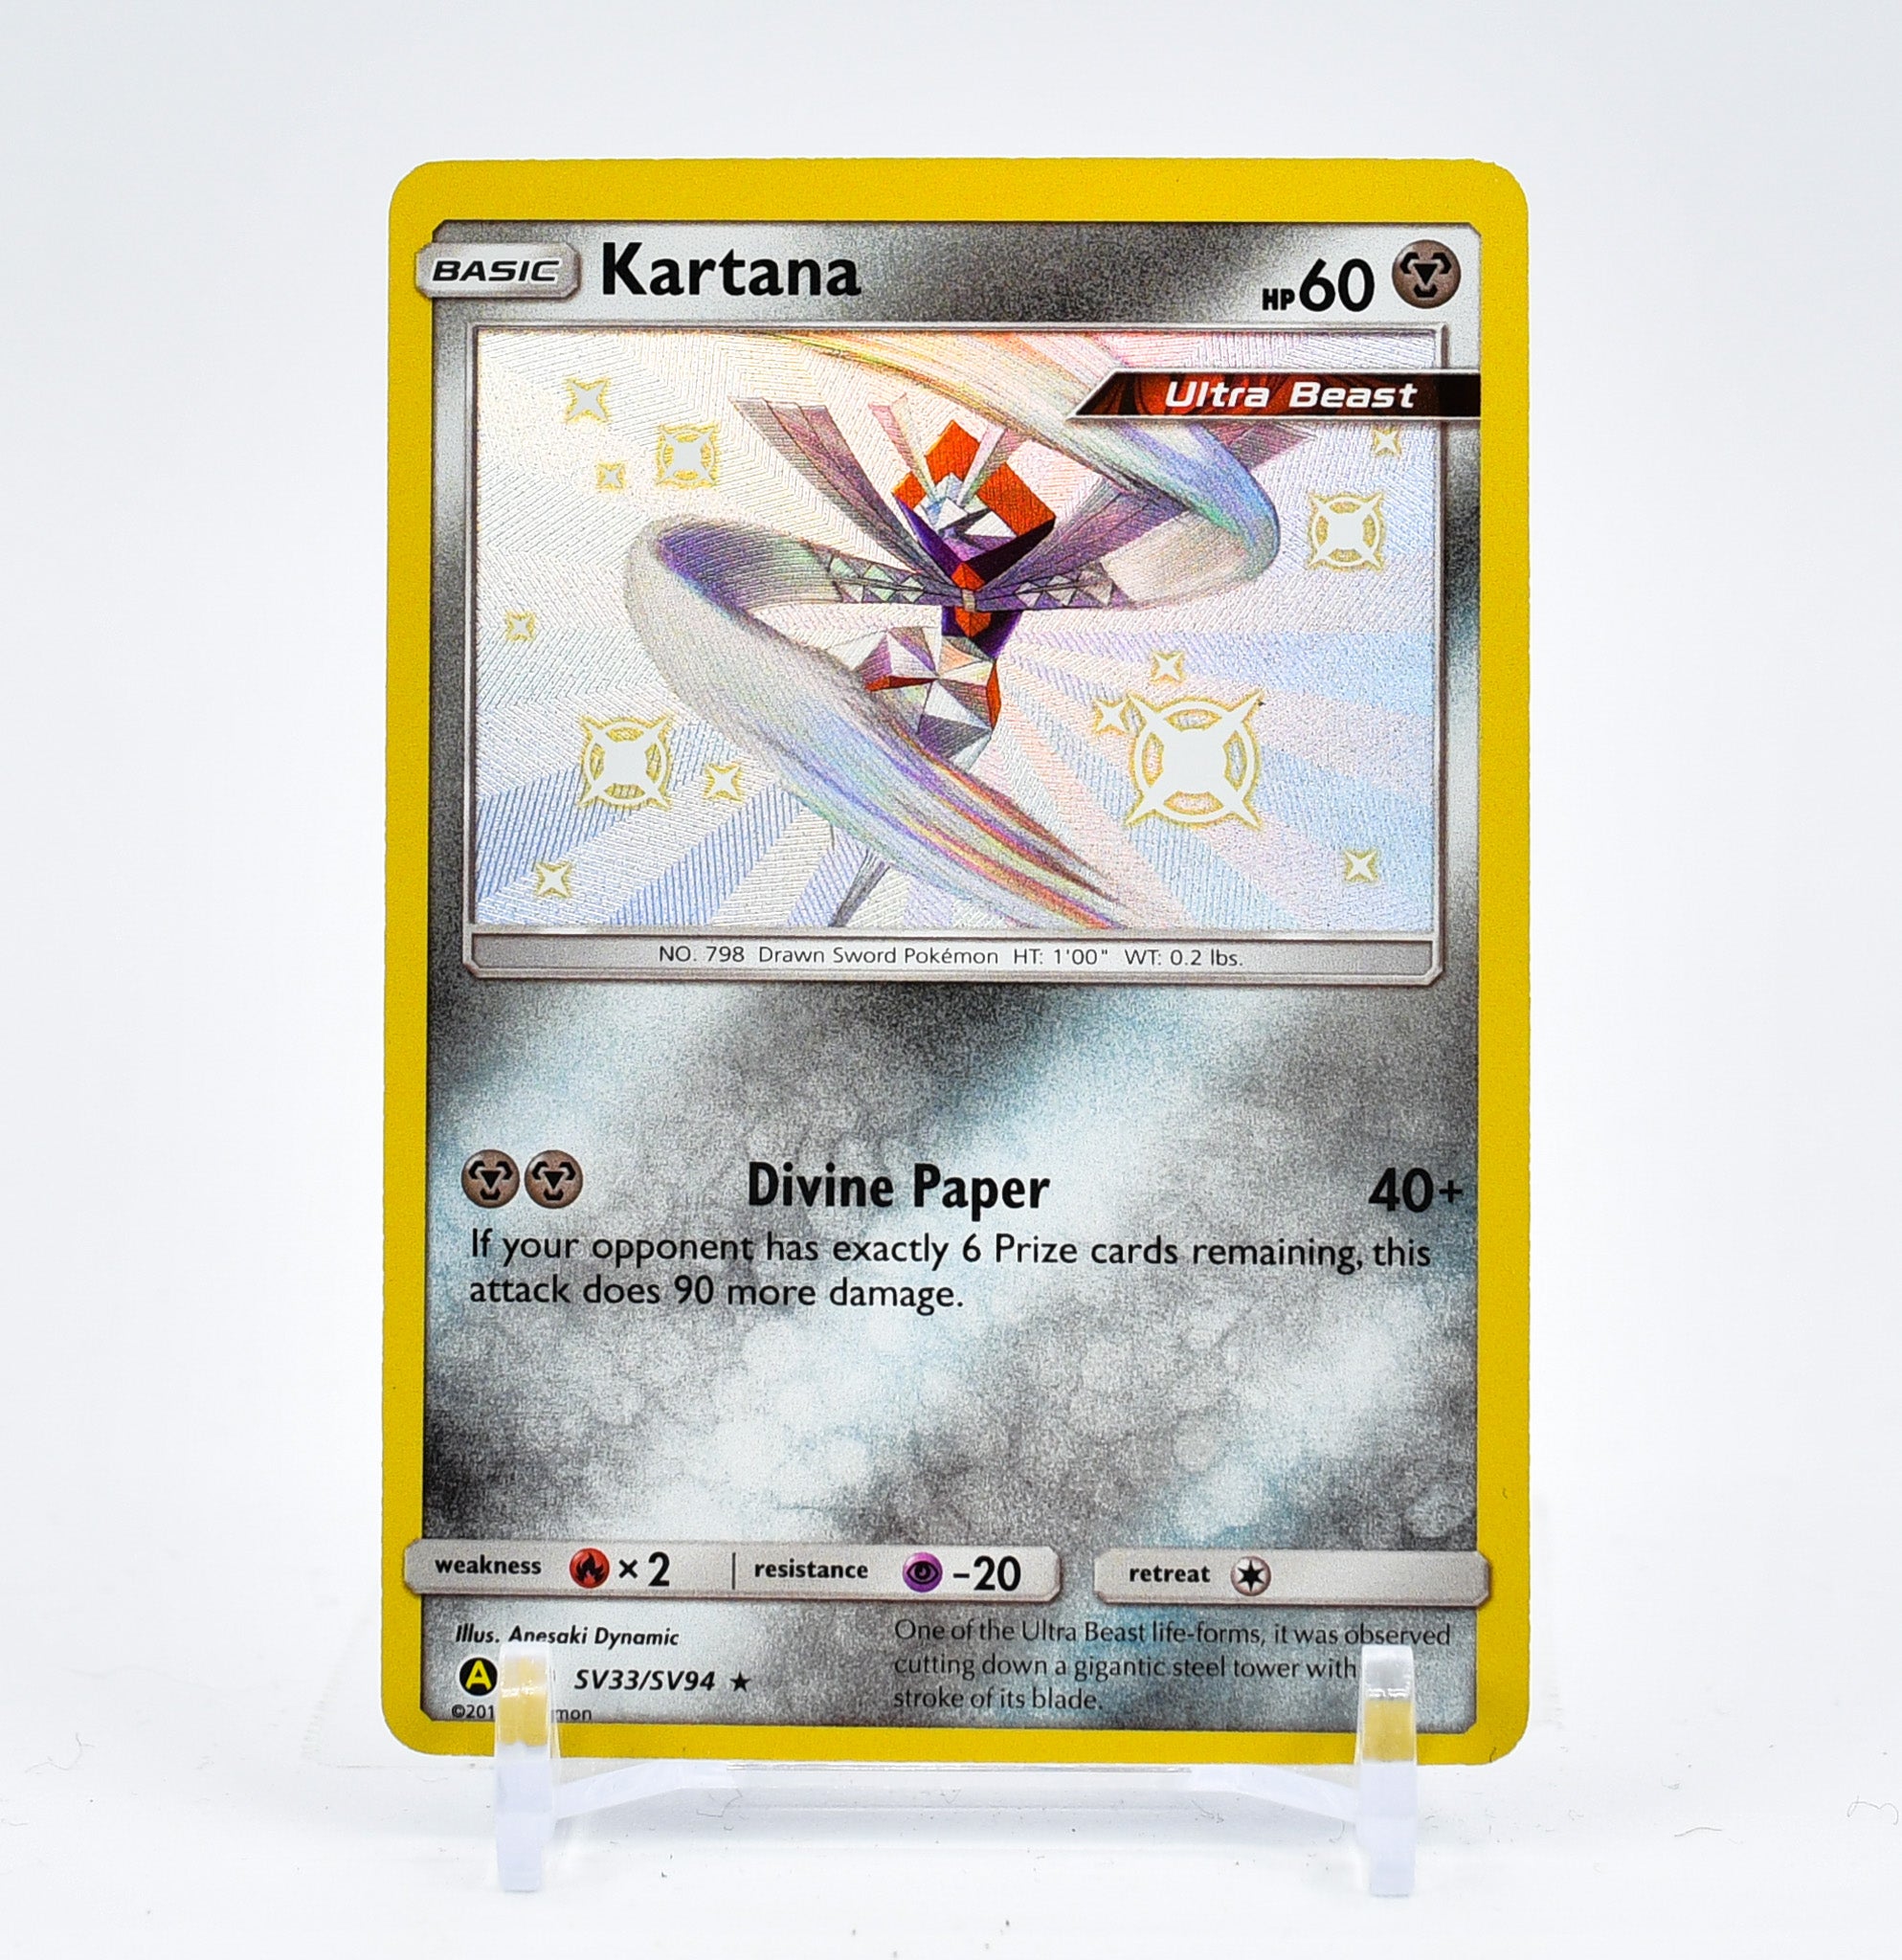 Kartana - SV33/SV94 Hidden Fates BABY SHINY Holo Rare Pokemon - NM/MIN –  The PokéTrade Emporium